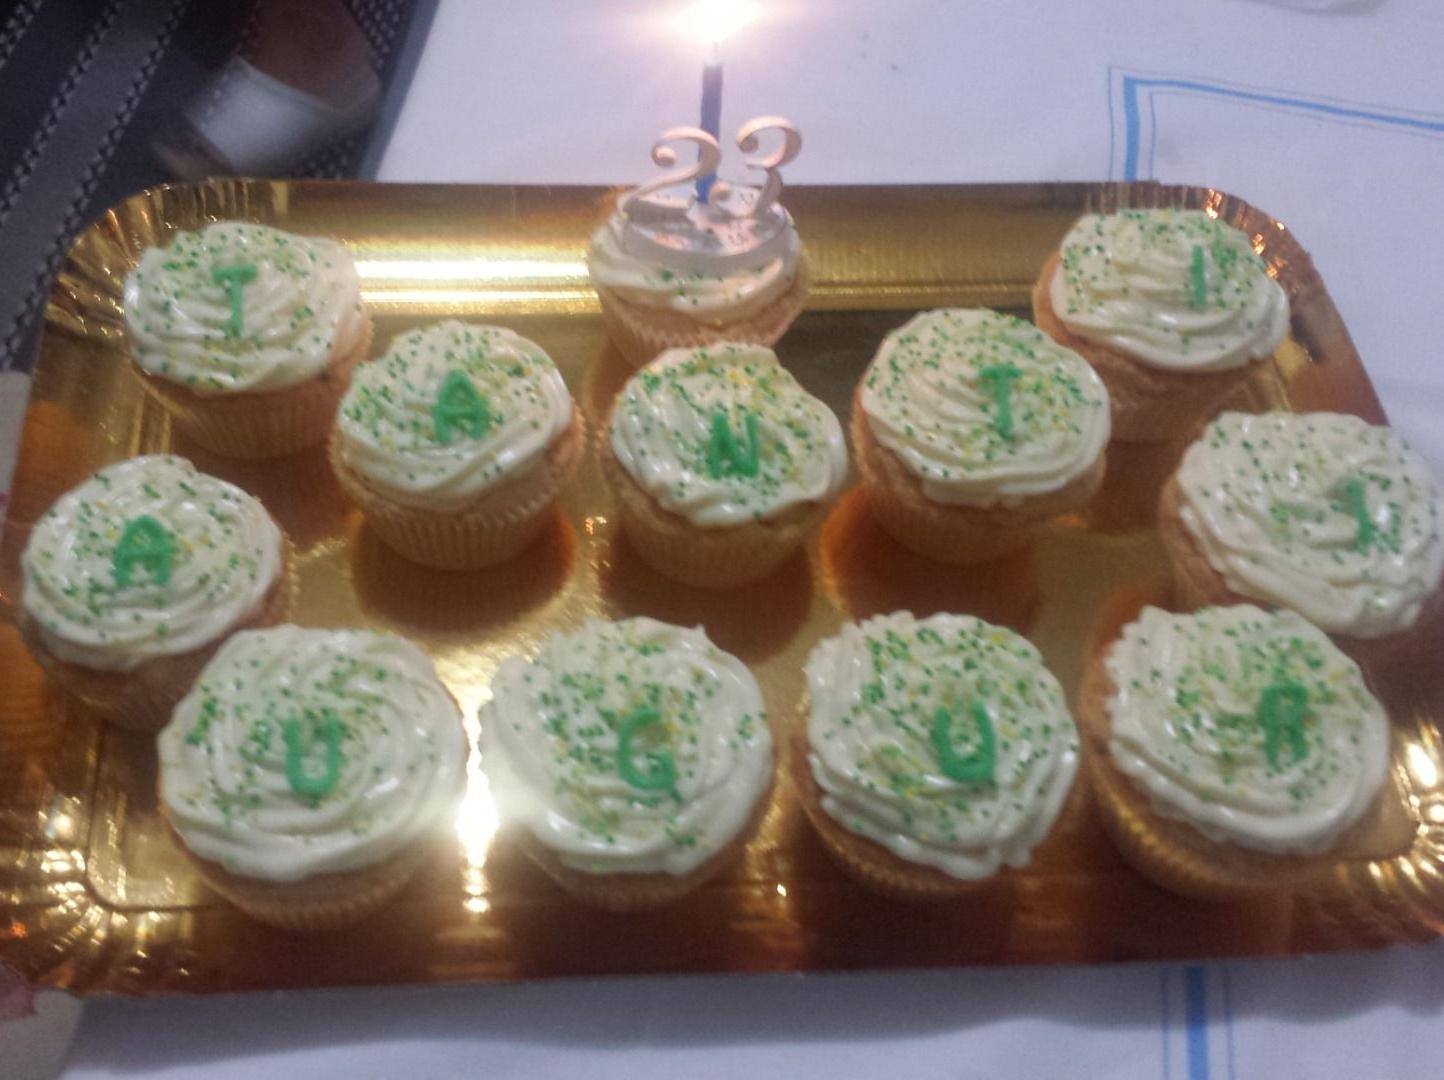 Cupcakes di compleanno